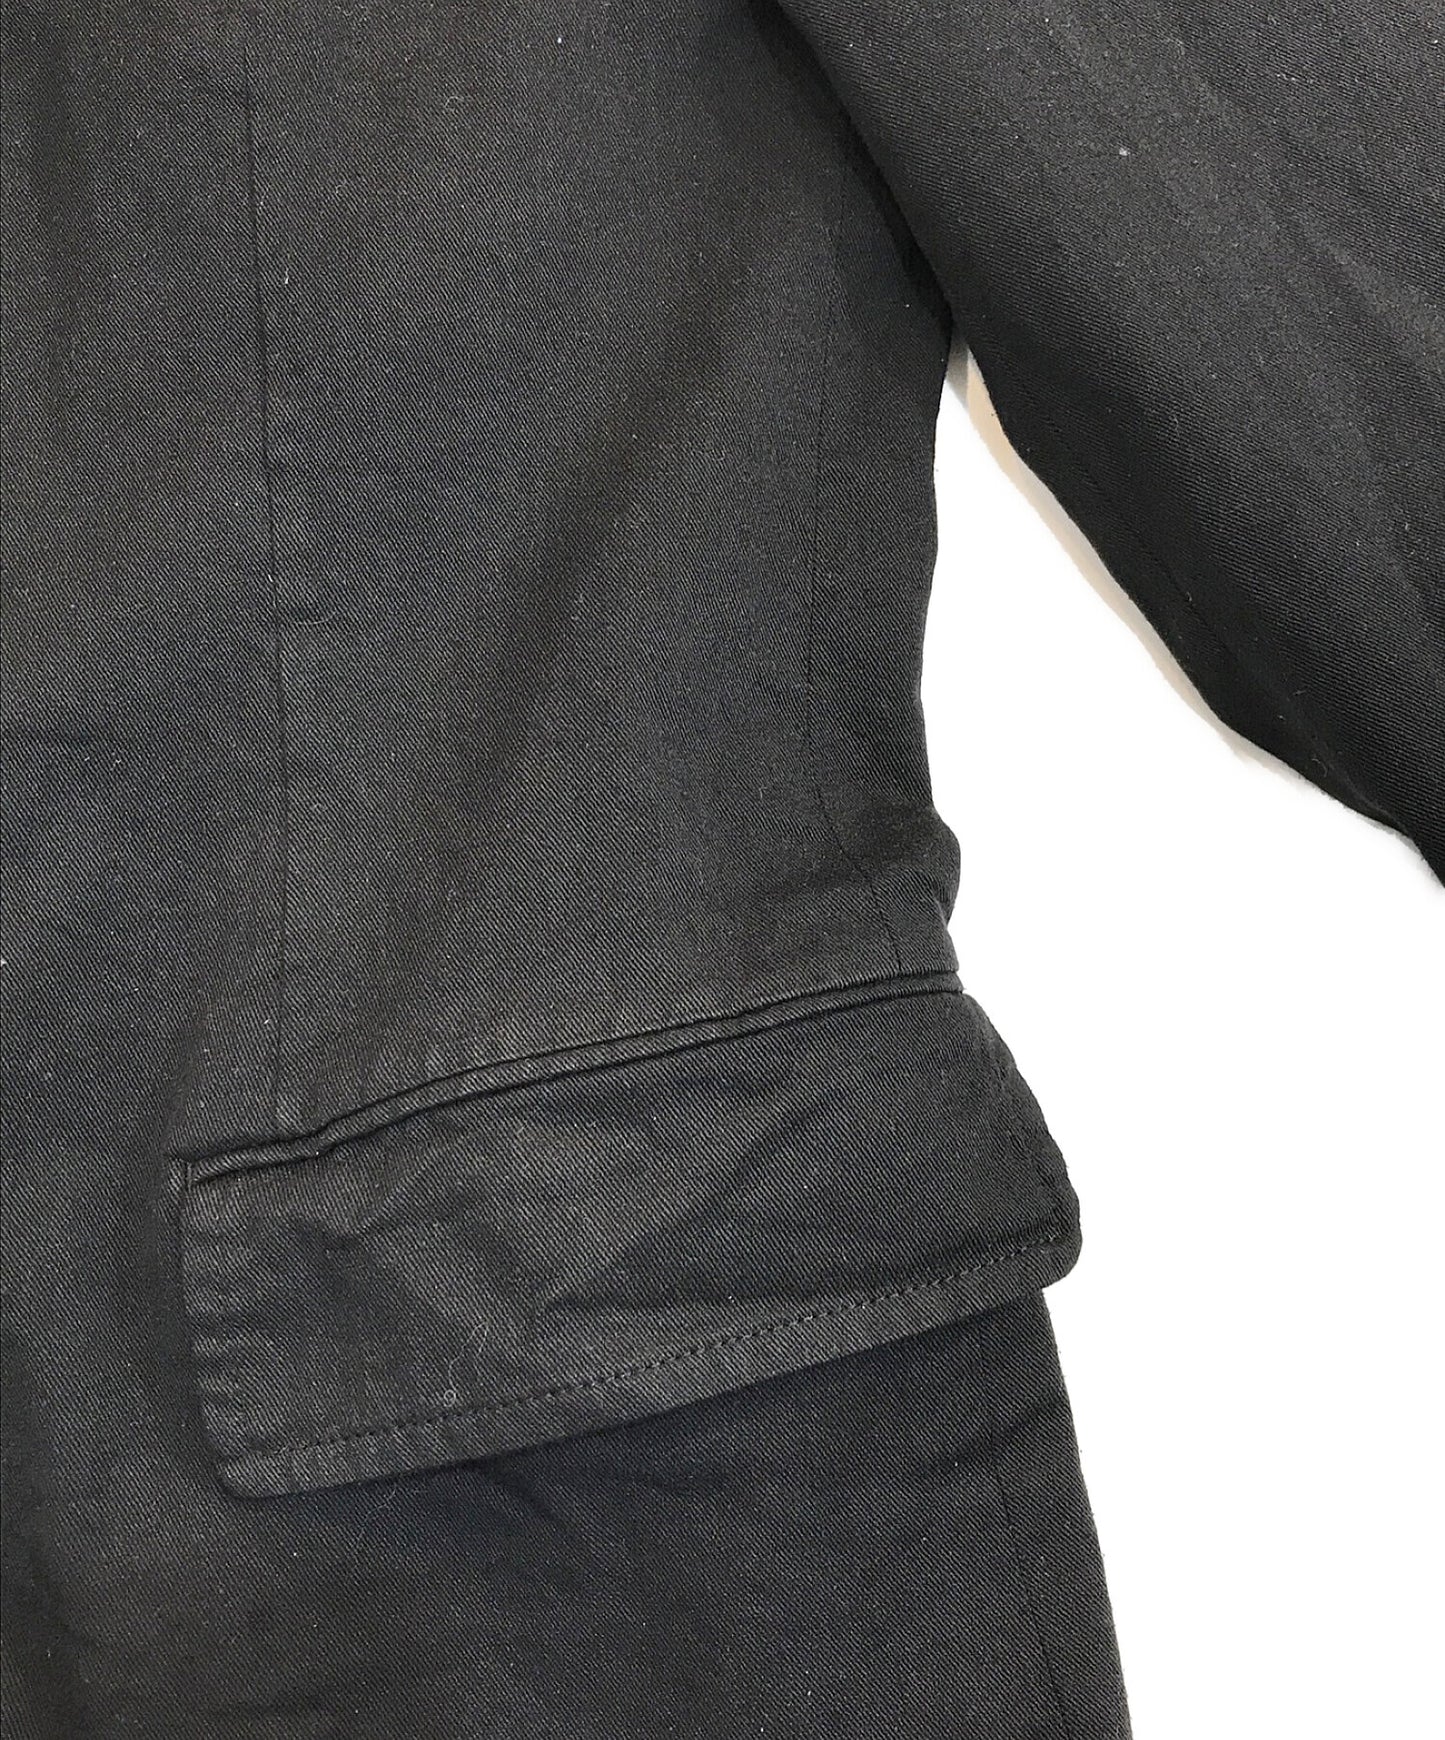 [Pre-owned] COMME des GARCONS HOMME Shrunken Tailored Jacket HO-J007